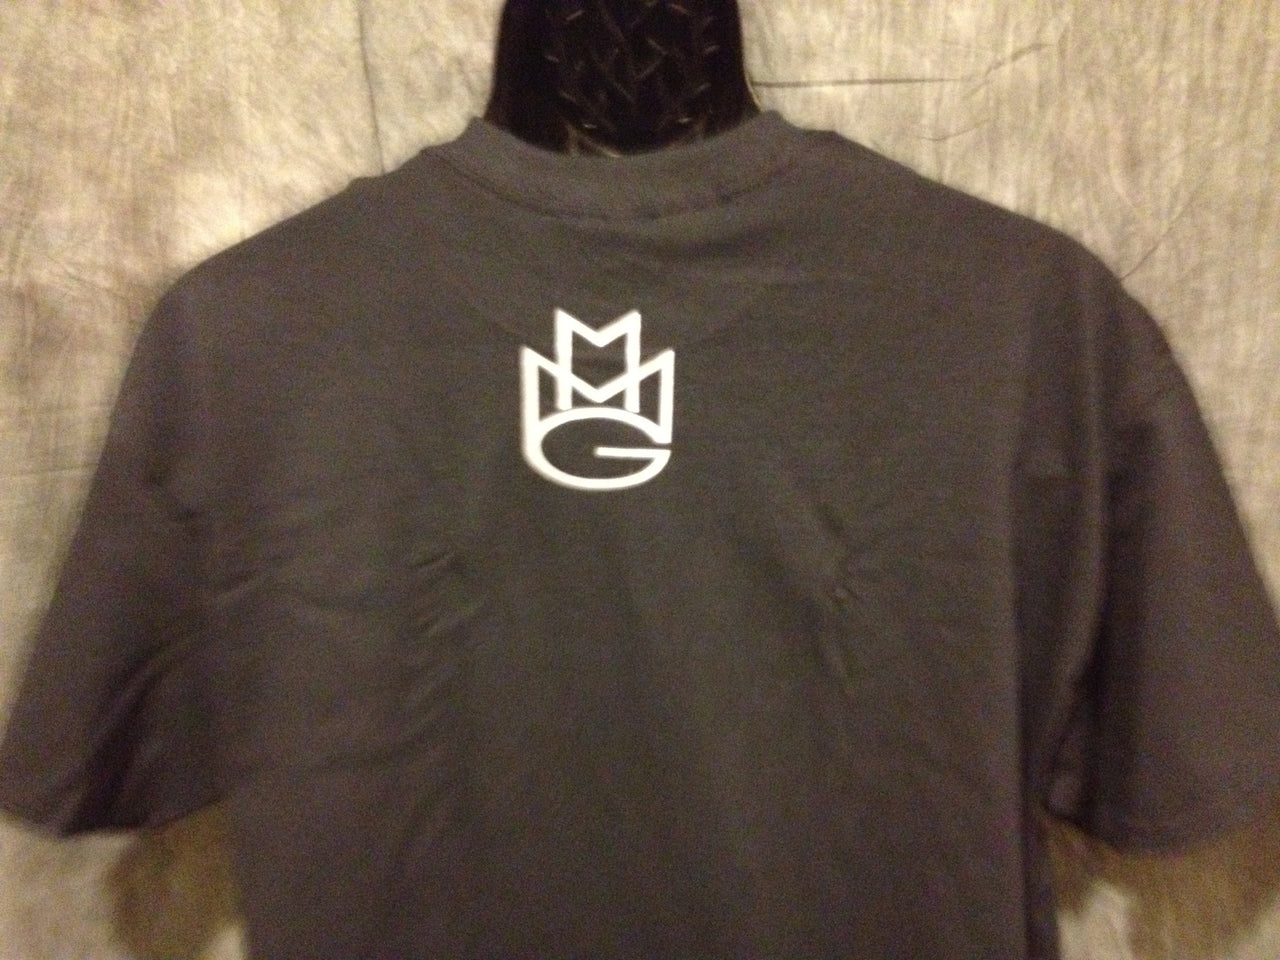 Maybach Music Group Tshirt: Black with Silver Print - TshirtNow.net - 4